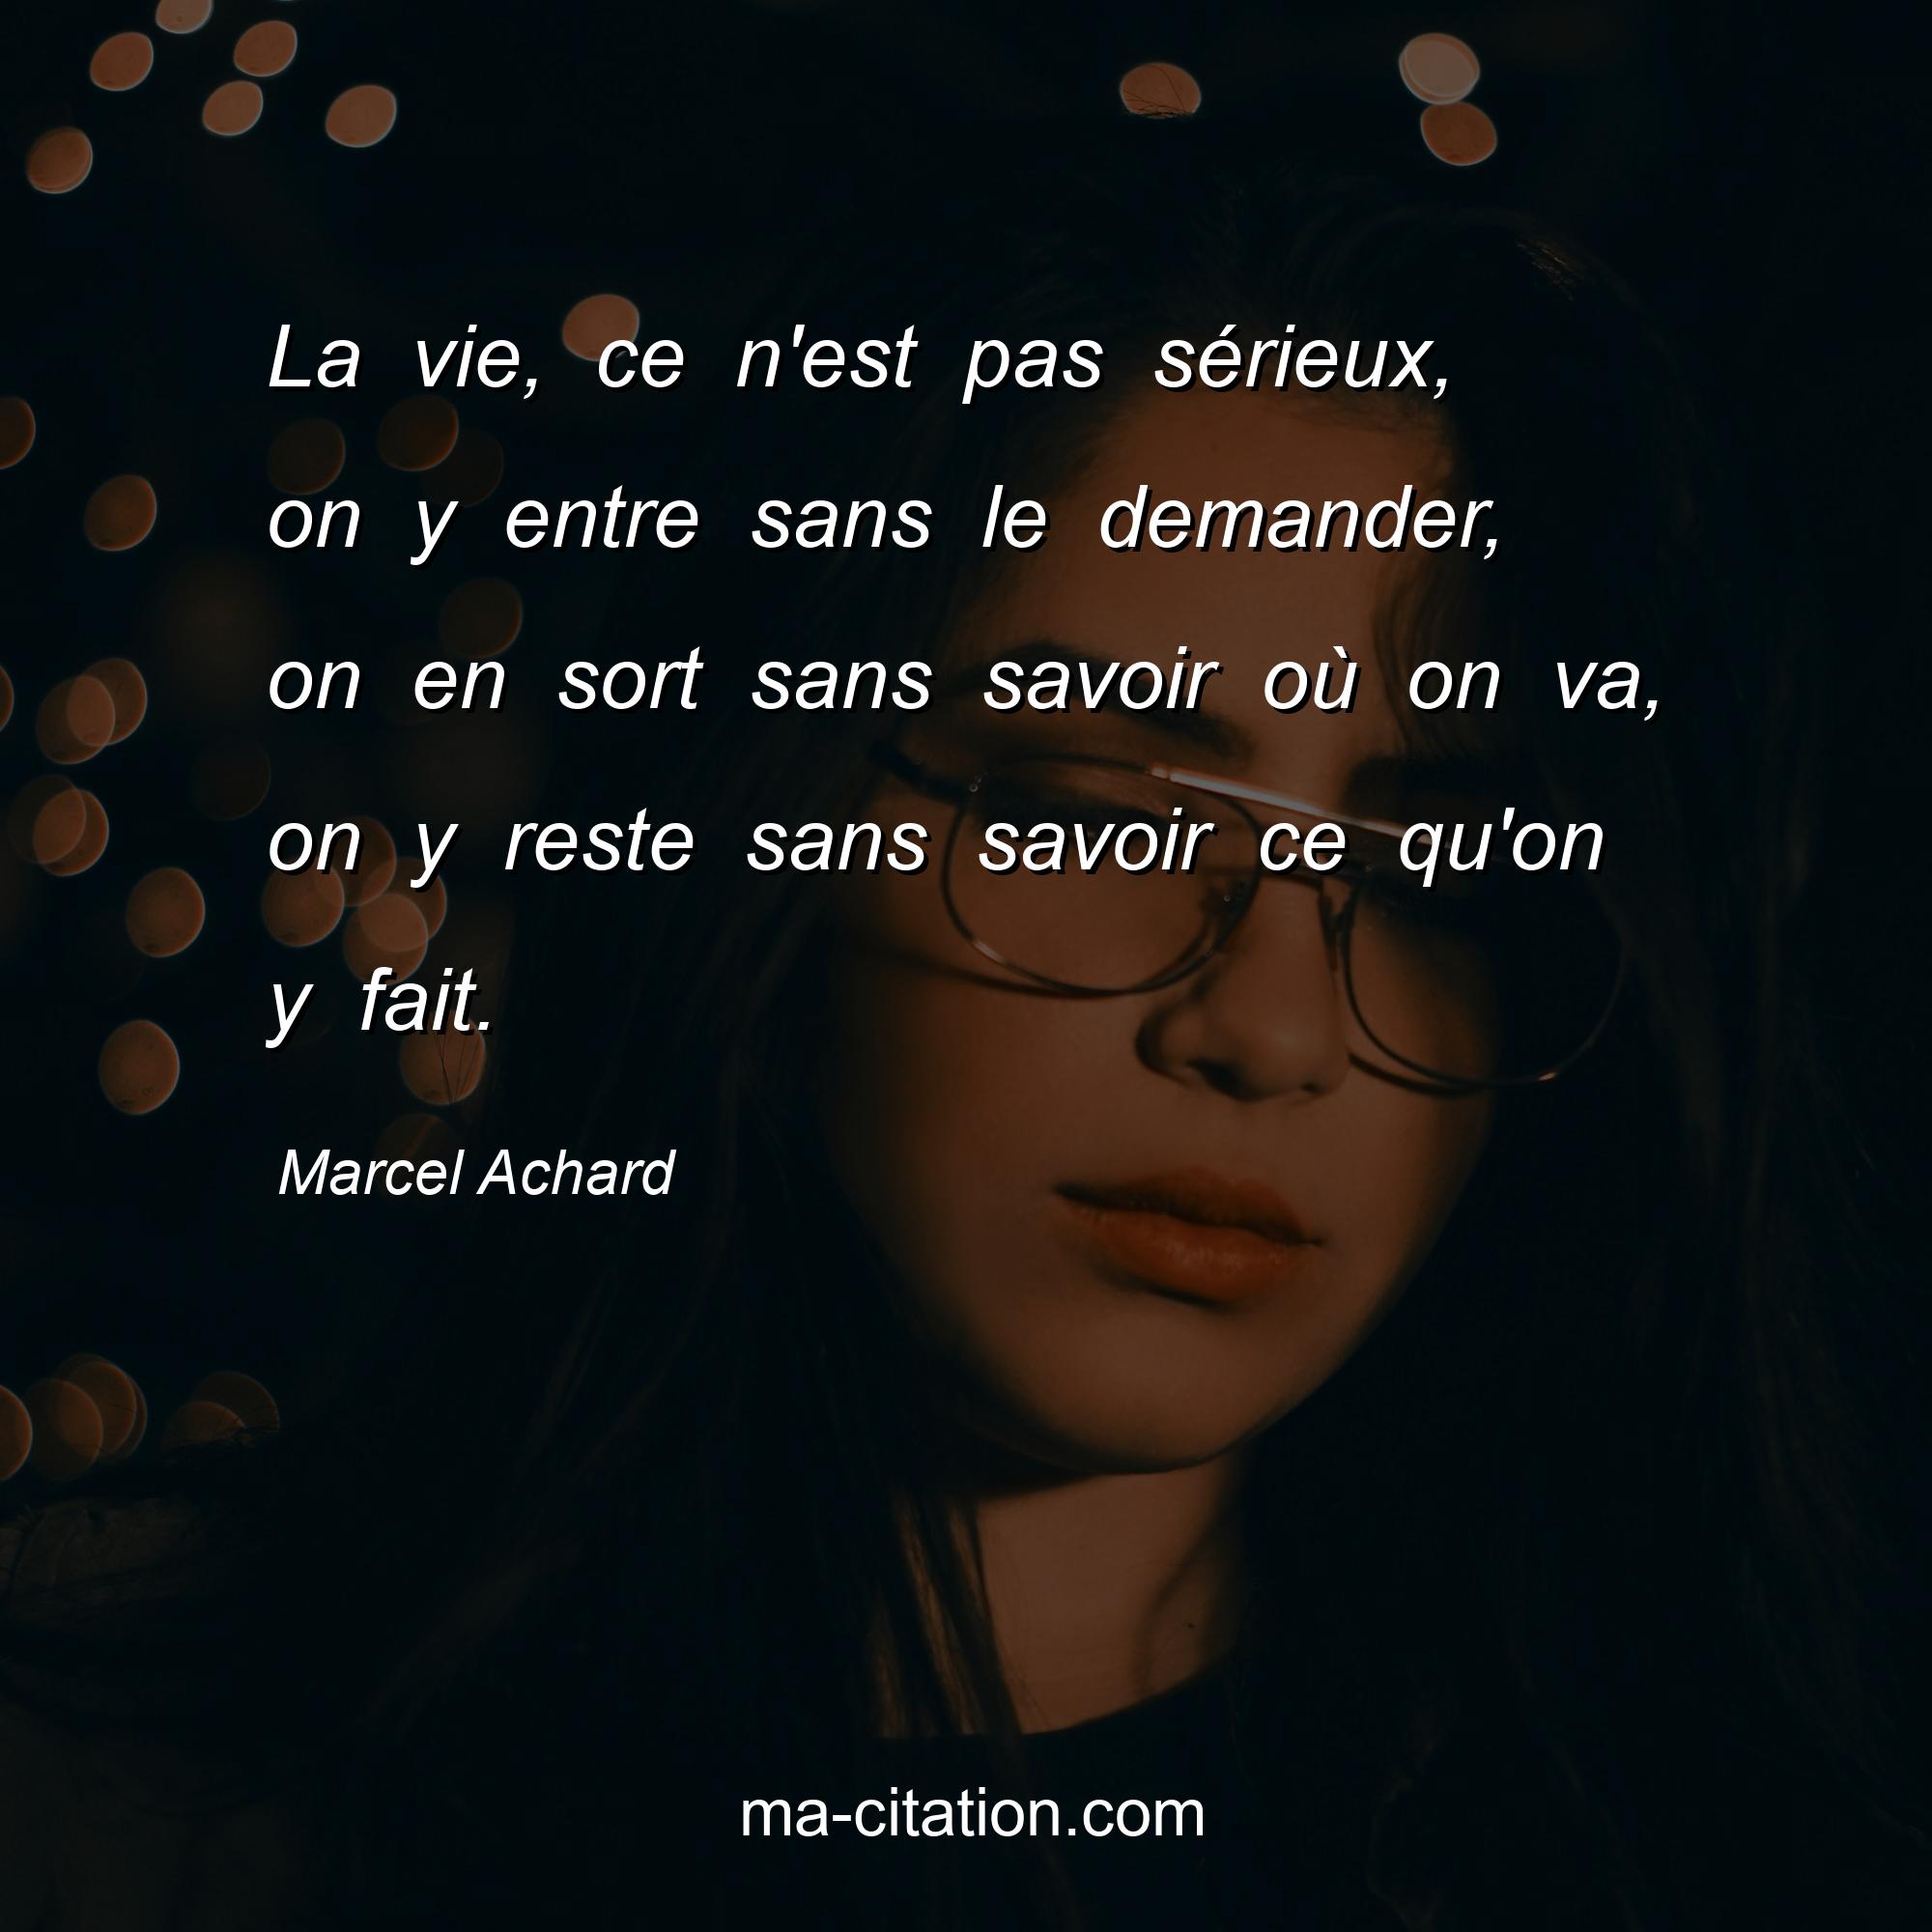 Marcel Achard : La vie, ce n'est pas sérieux, on y entre sans le demander, on en sort sans savoir où on va, on y reste sans savoir ce qu'on y fait.